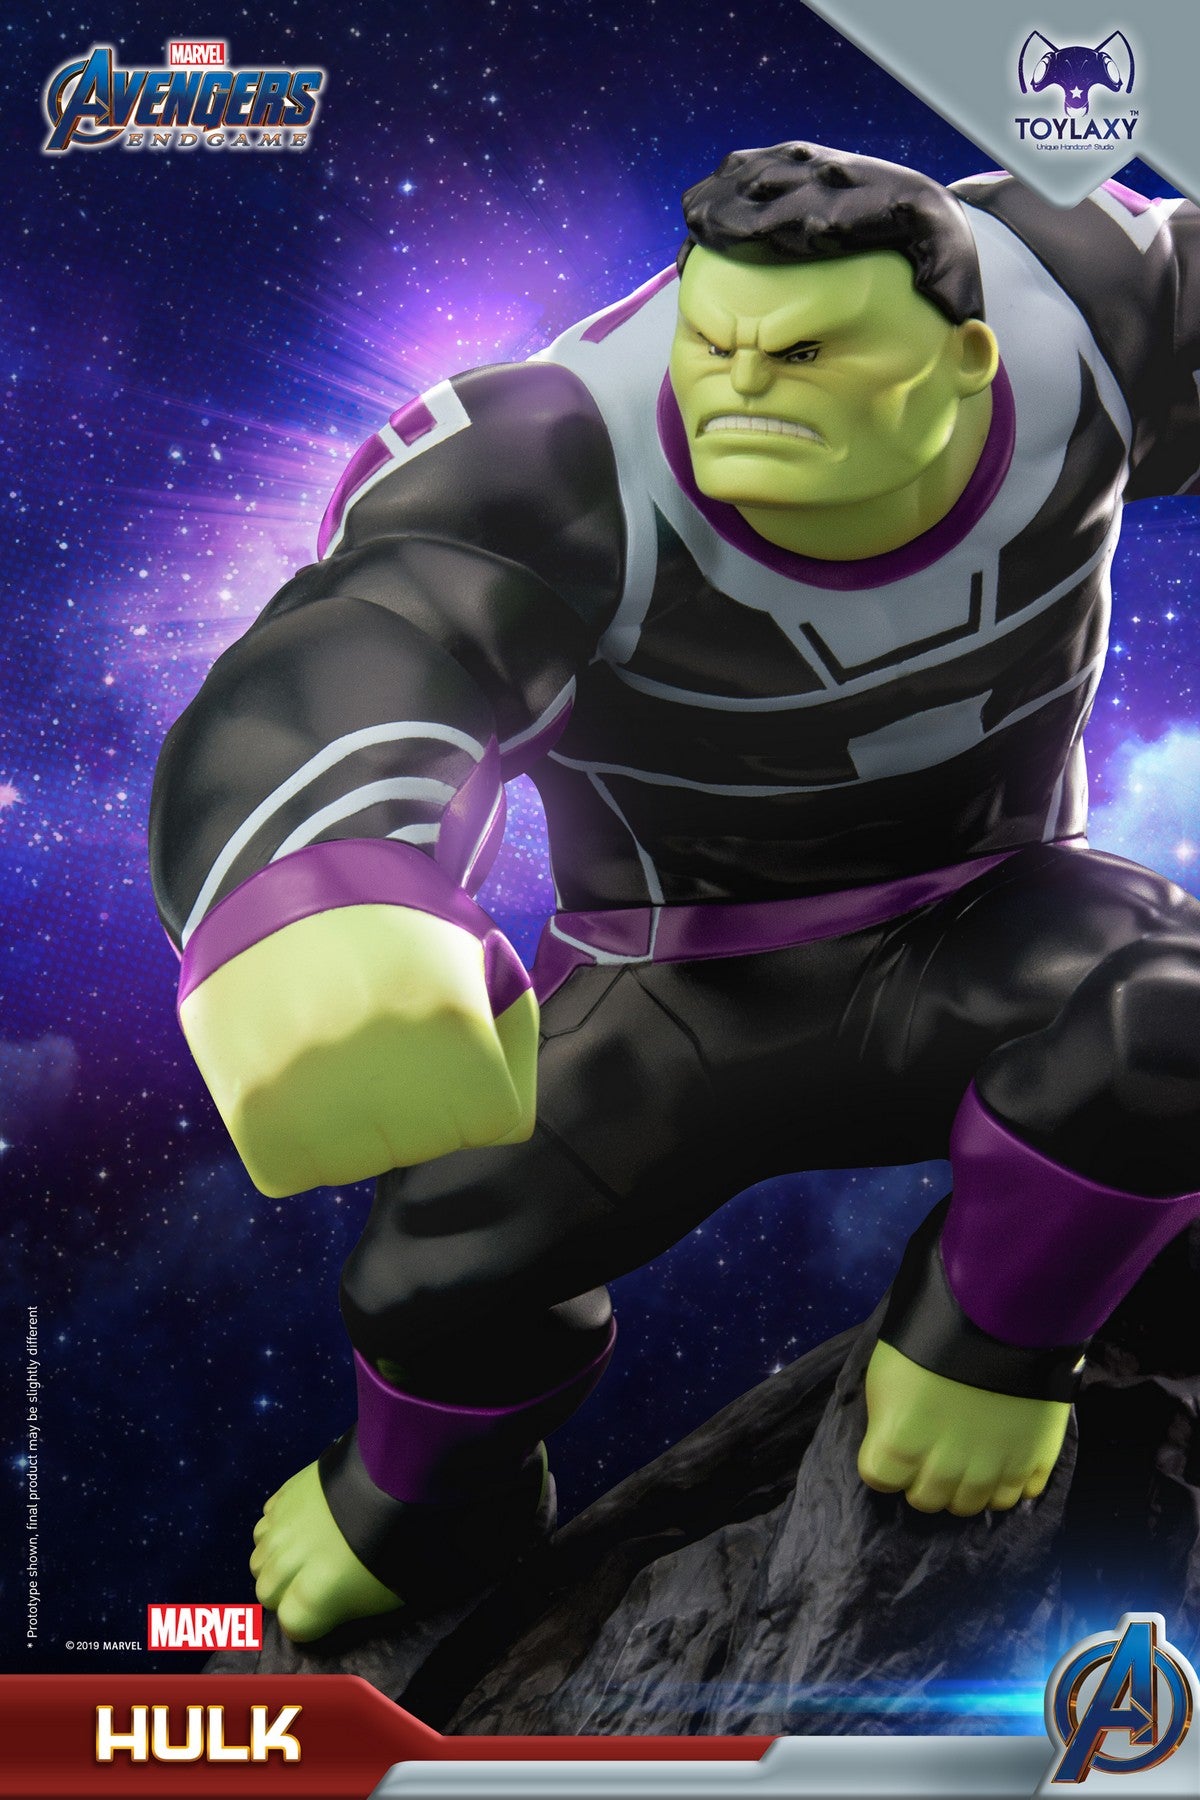 漫威復仇者聯盟：綠巨人 浩克正版模型手辦人偶玩具 Marvel's Avengers: Endgame Premium PVC Hulk figure toy powerful